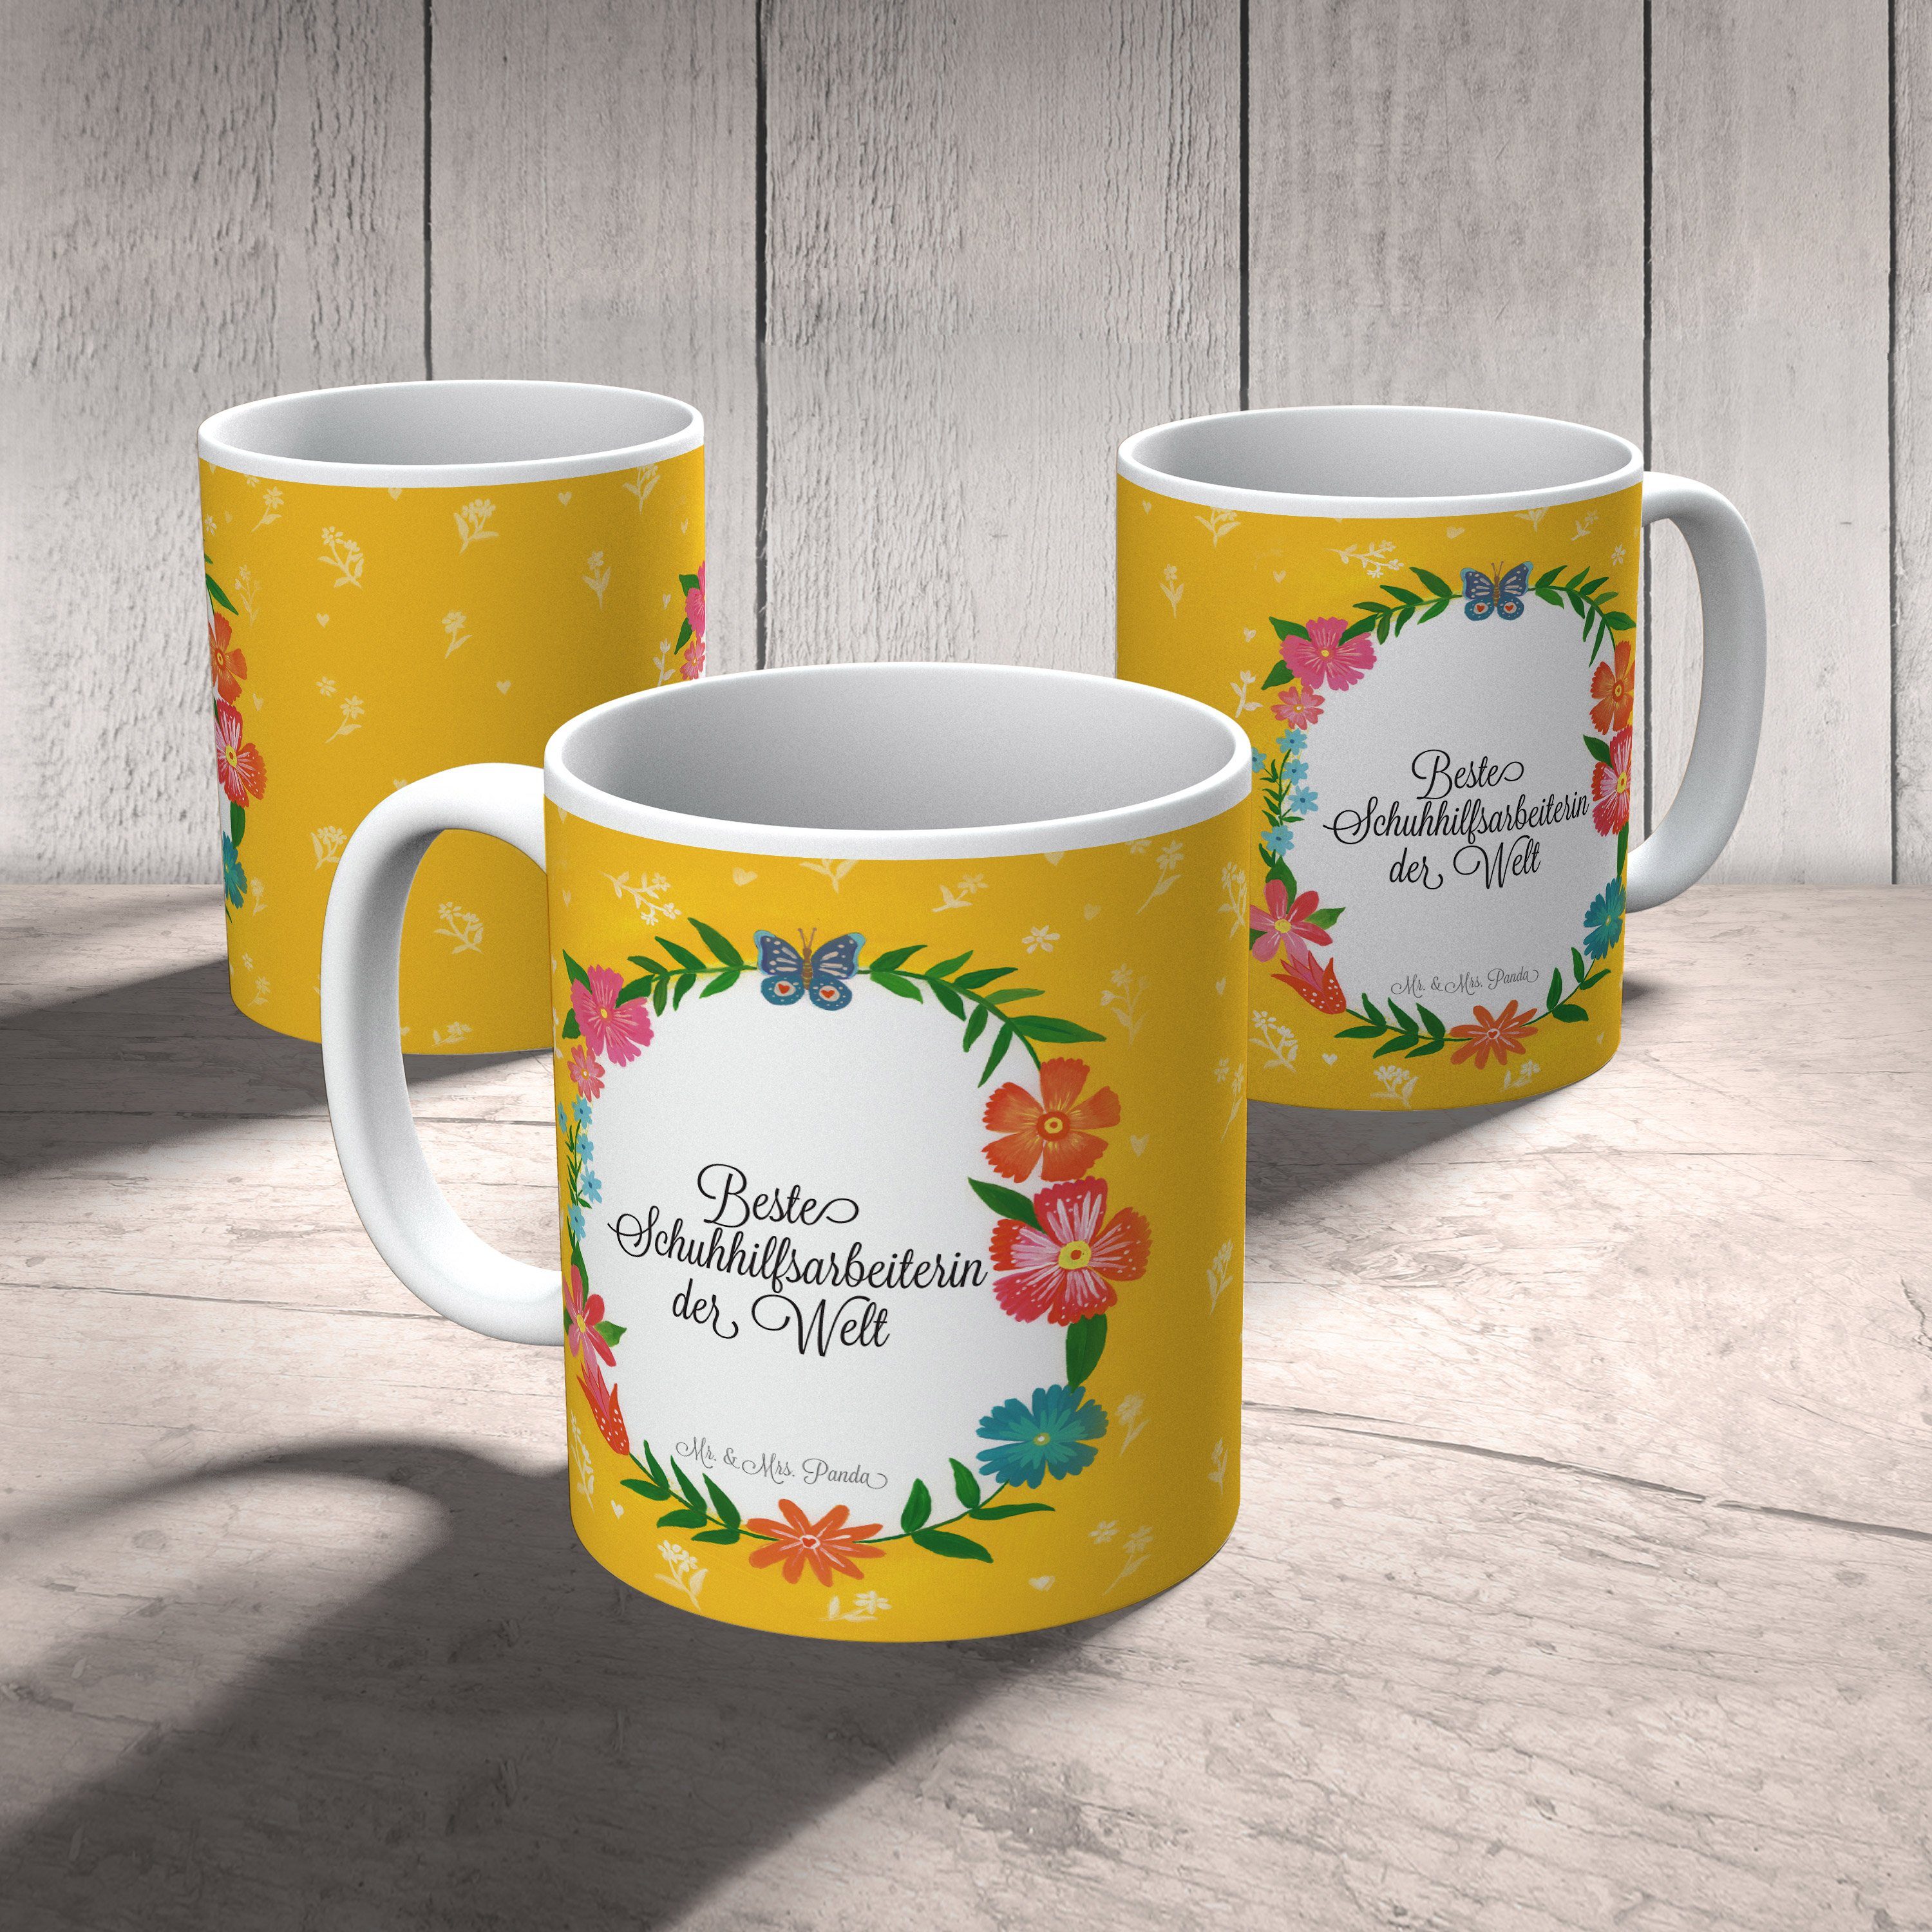 Mr. & Mrs. Geschenk, Tasse Schenken, Kaff, Panda Schuhhilfsarbeiterin Büro Tasse, - Keramik Teetasse